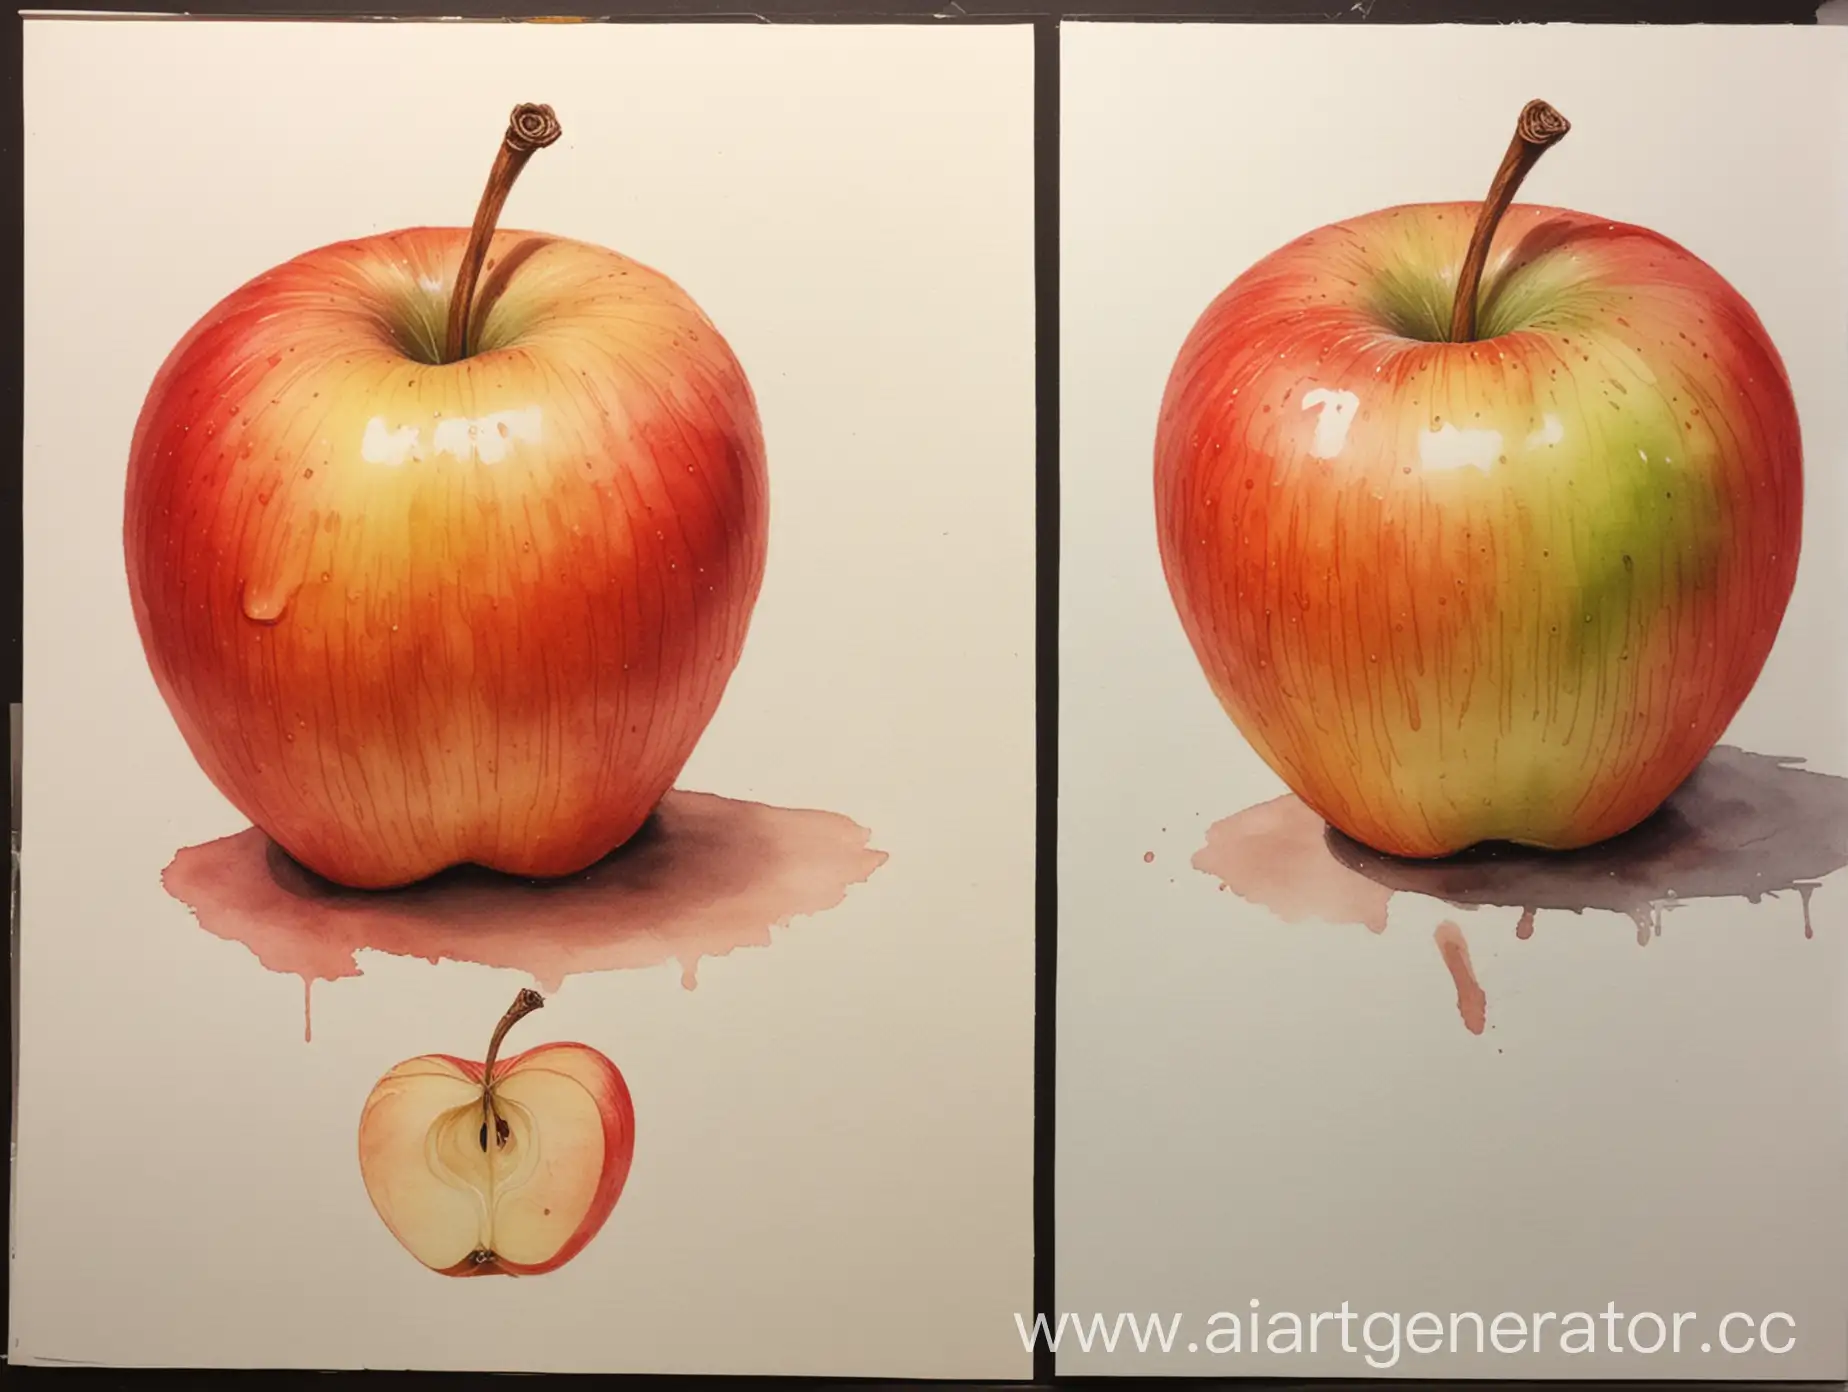 Академический рисунок, красками акварелью, рисуем яблоко в теплом колорите, соблюдая тональность, на другом яблоко в холодном колорите.